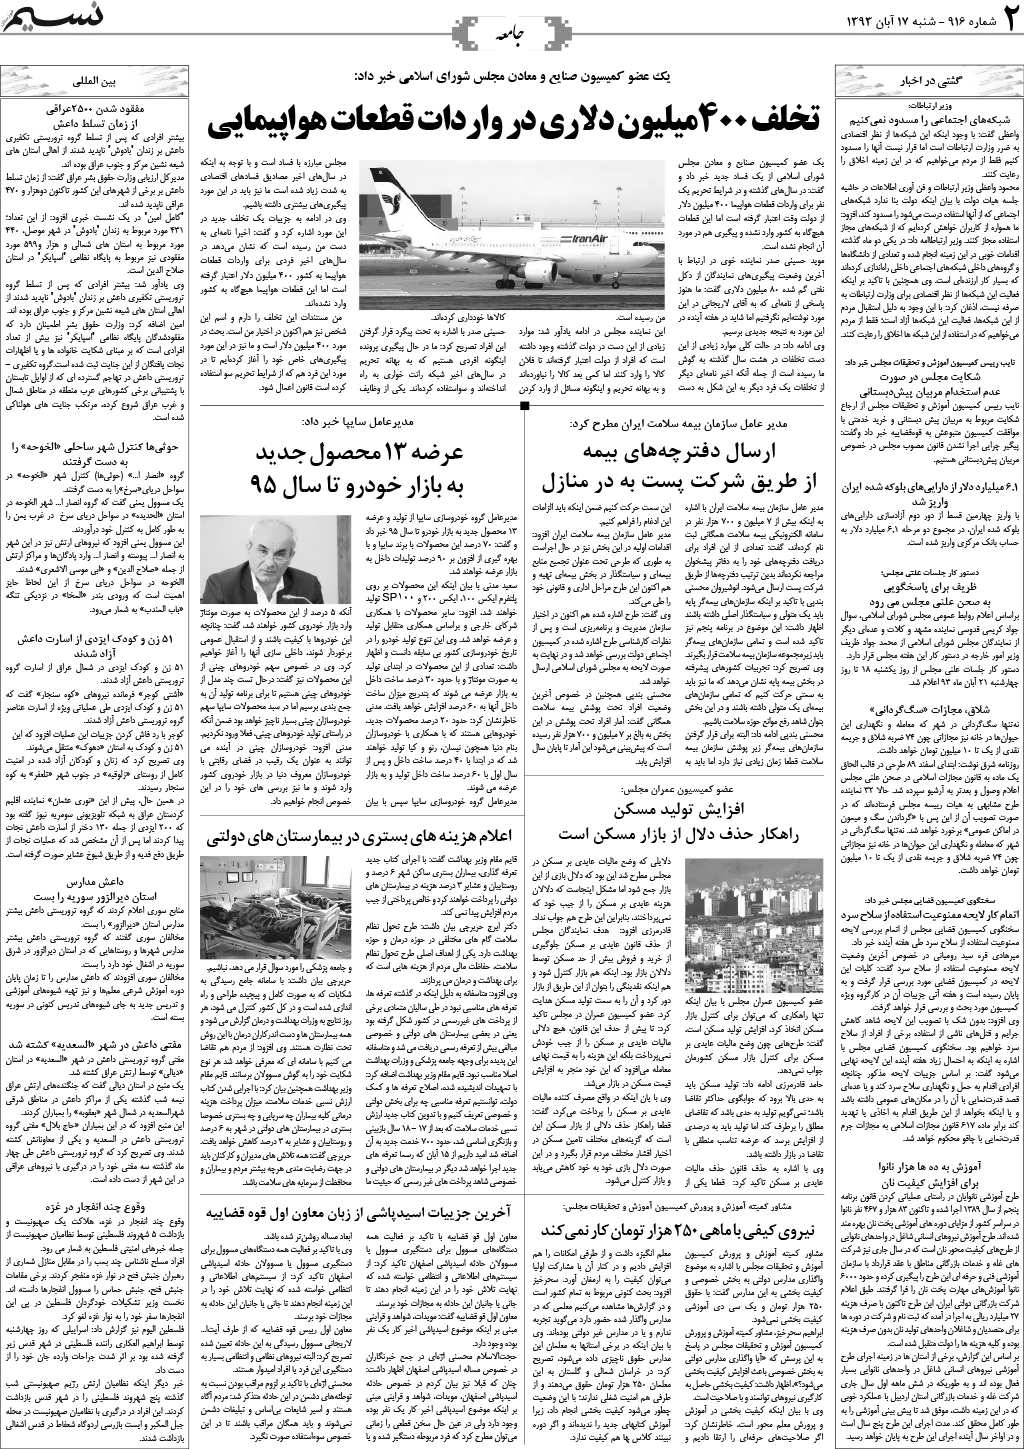 صفحه جامعه روزنامه نسیم شماره 916